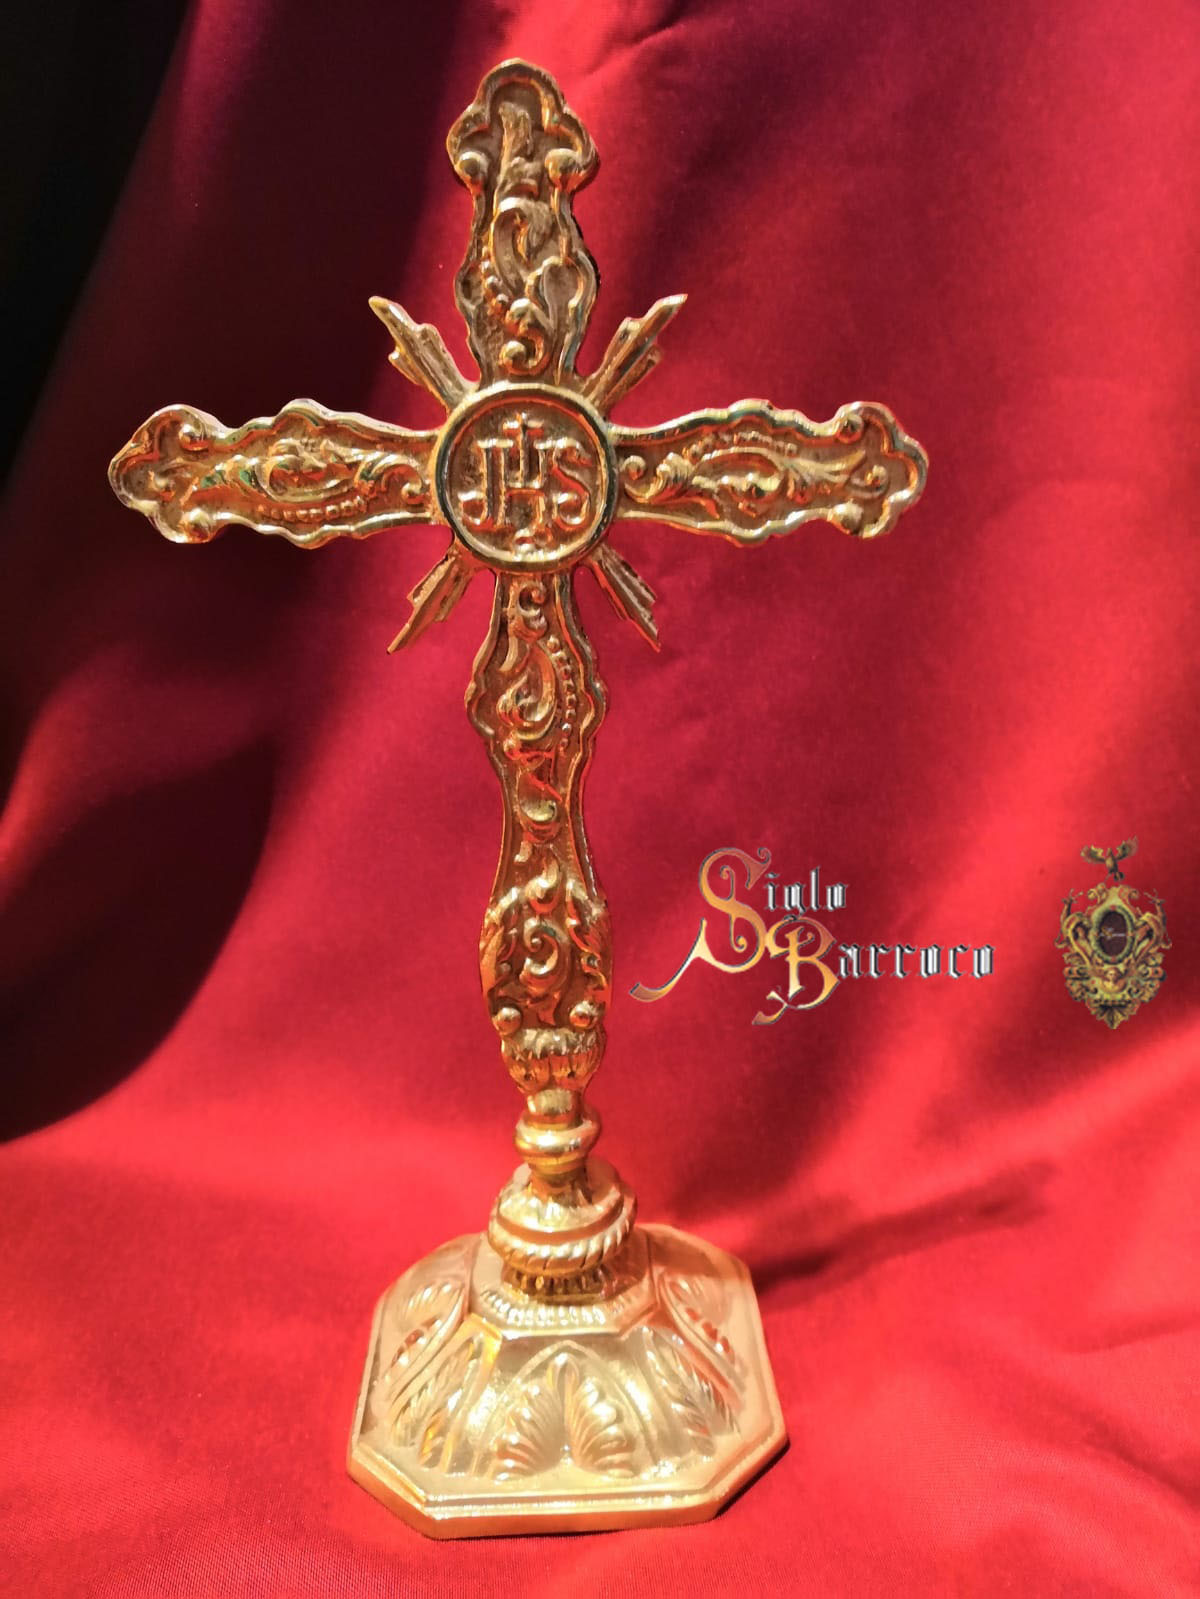 Cruz de mesa de altar - Cruces de altar - Siglo Barroco | Tienda cofrade